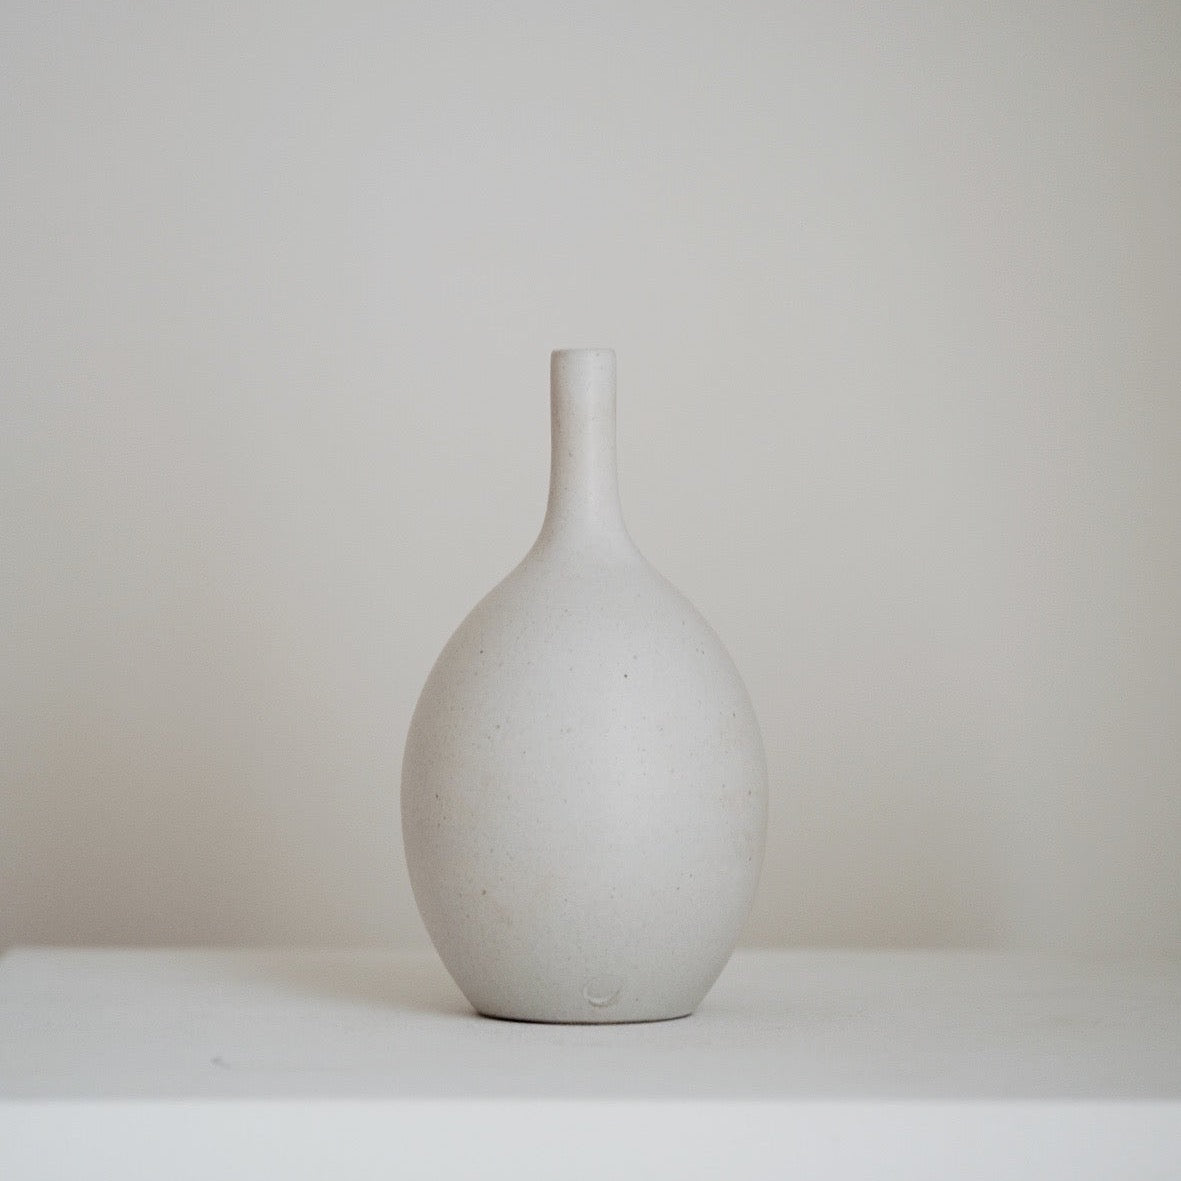 Untitled; Vases 2021